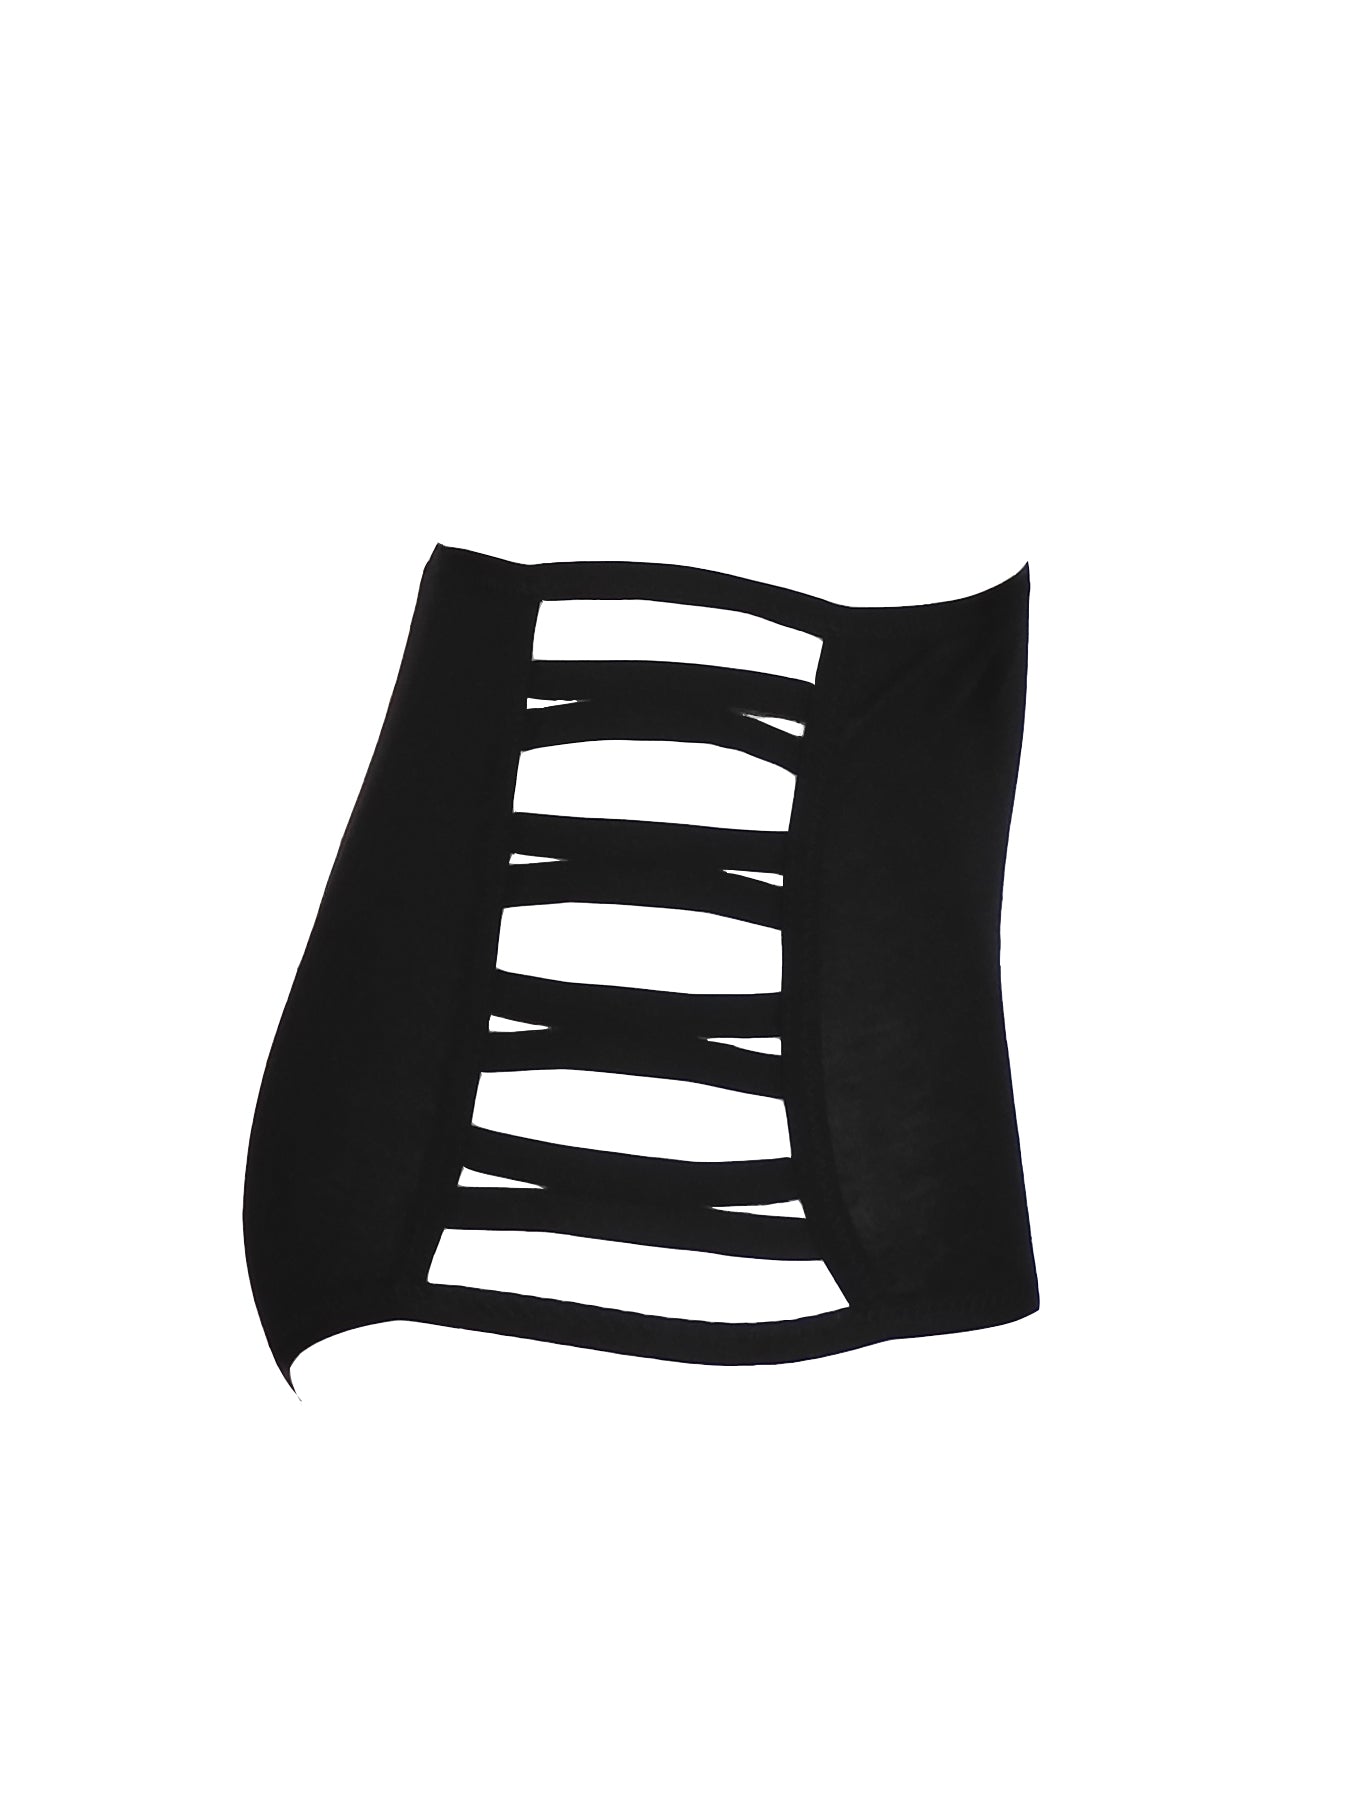 Schwarzer high waist Taillen-Slip seitlich geöffnet seitliche Ansicht| fishbelly handmade Lingerie